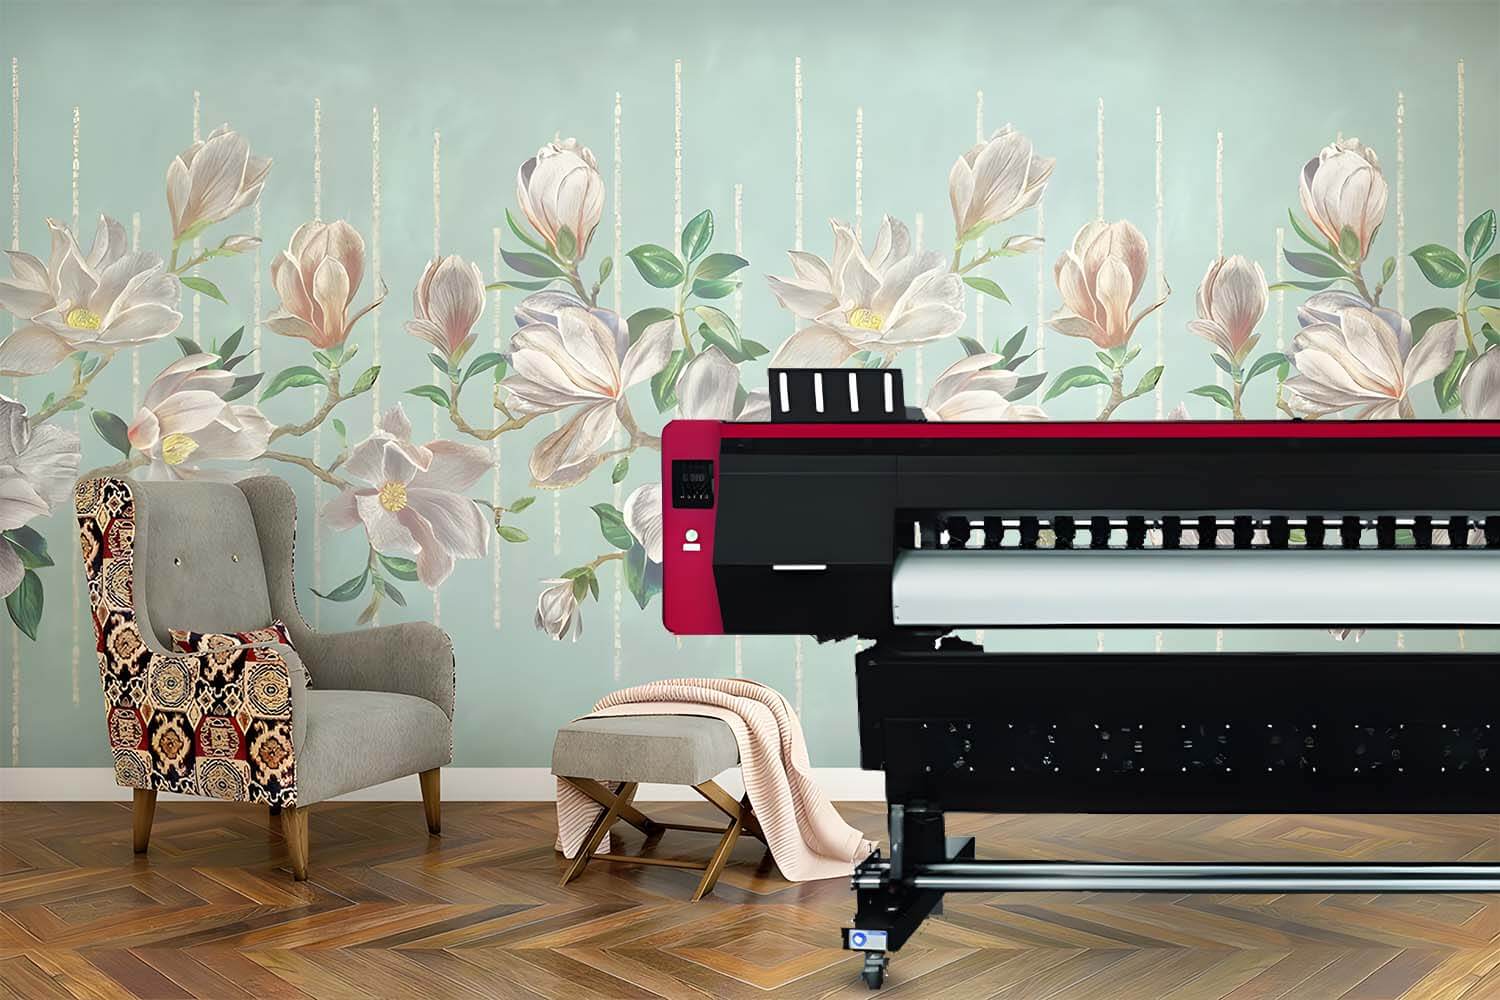 Koleksi Stiker Dinding Berwarna Cerah Dicetak Oleh Printer Ecosolvent, Simbolisasi Peluang Bisnis Dekorasi Rumah.